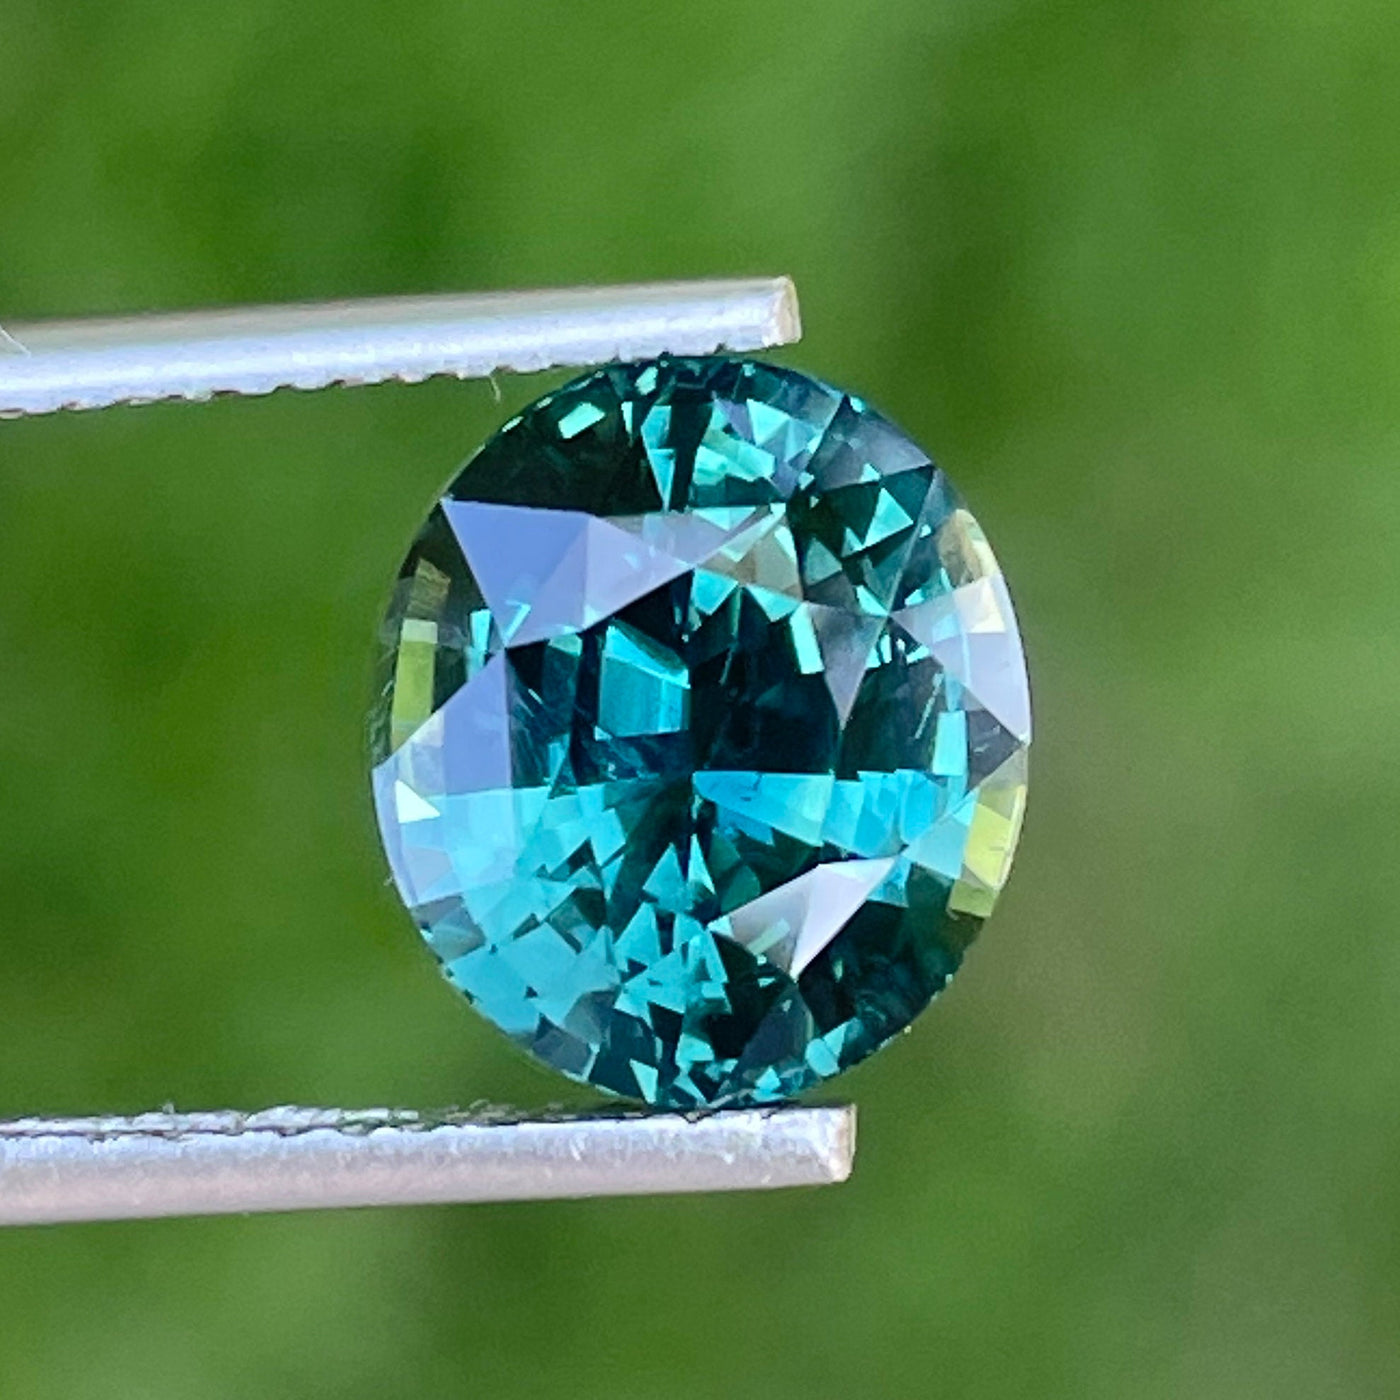 Teal Sapphire l 5.02 Ct l 10.1x 9.0 x 6.4mm l Oval l Madagascar l Natural Sapphire l Fine Sapphire For Bespoke Jewelry l Engagement Ring